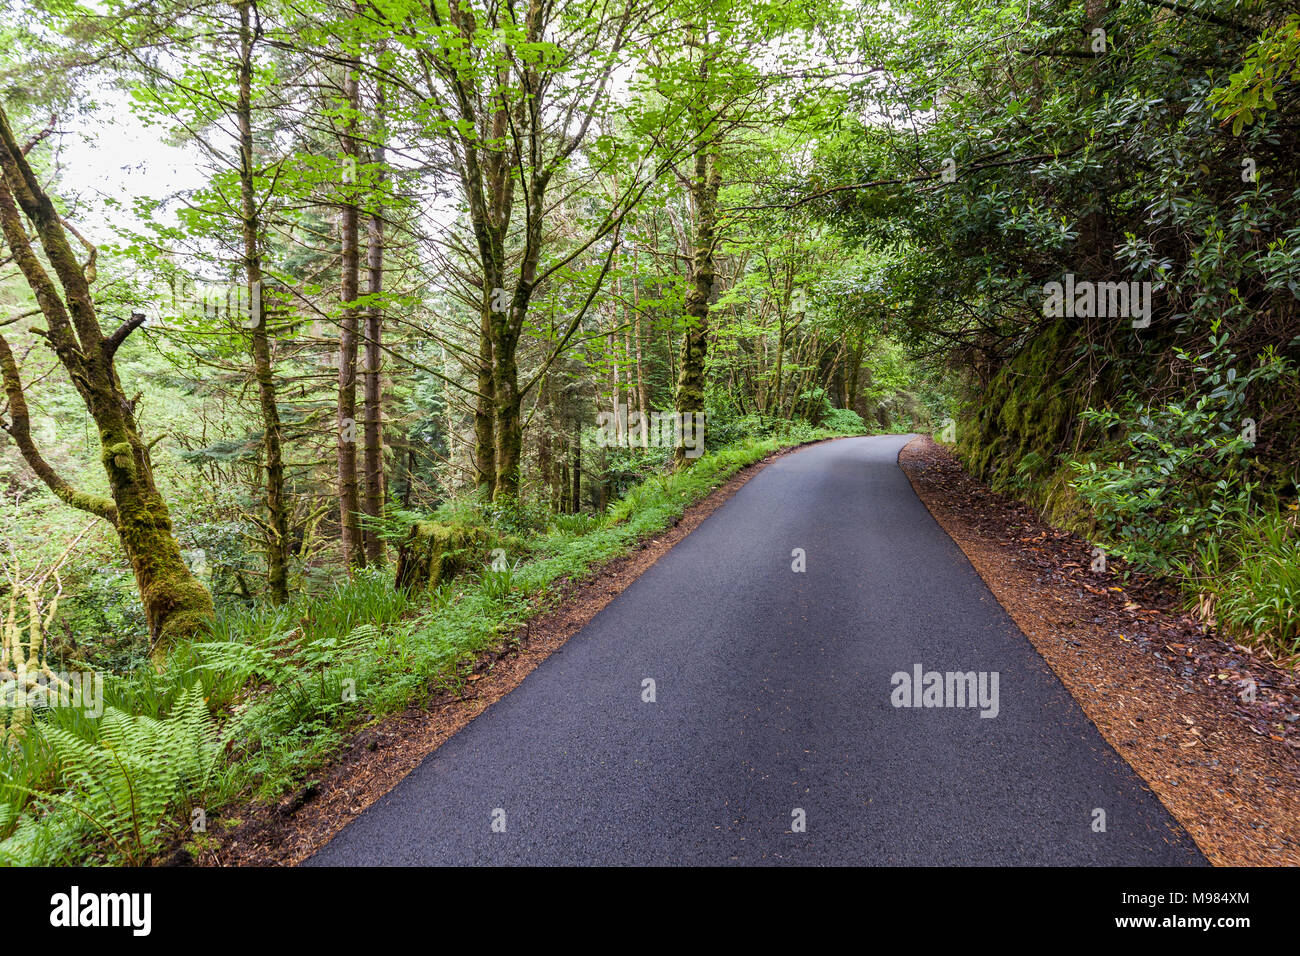 Schottland, Westküste, Highlands, bei Plockton, Straße durch einen dichten Wald, asfalto, dichte vegetación, grün, Weg, Richtung Foto de stock